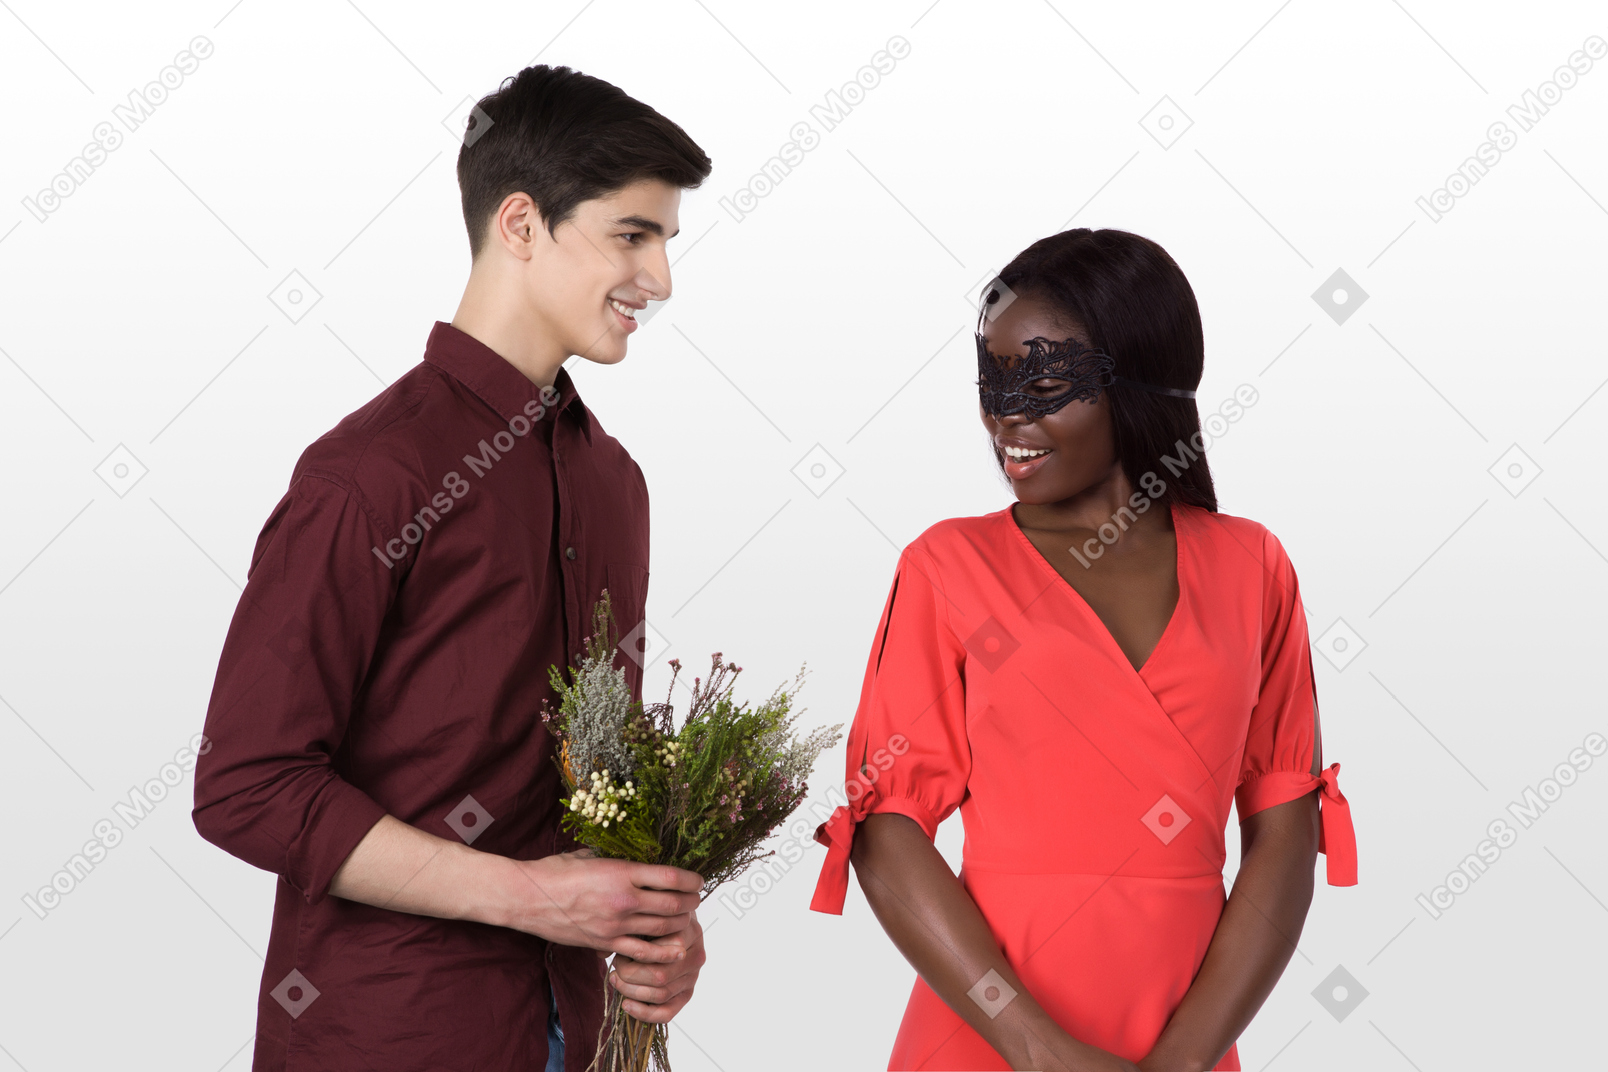 L'uomo bello portò dei fiori per la sua ragazza in maschera di carnevale